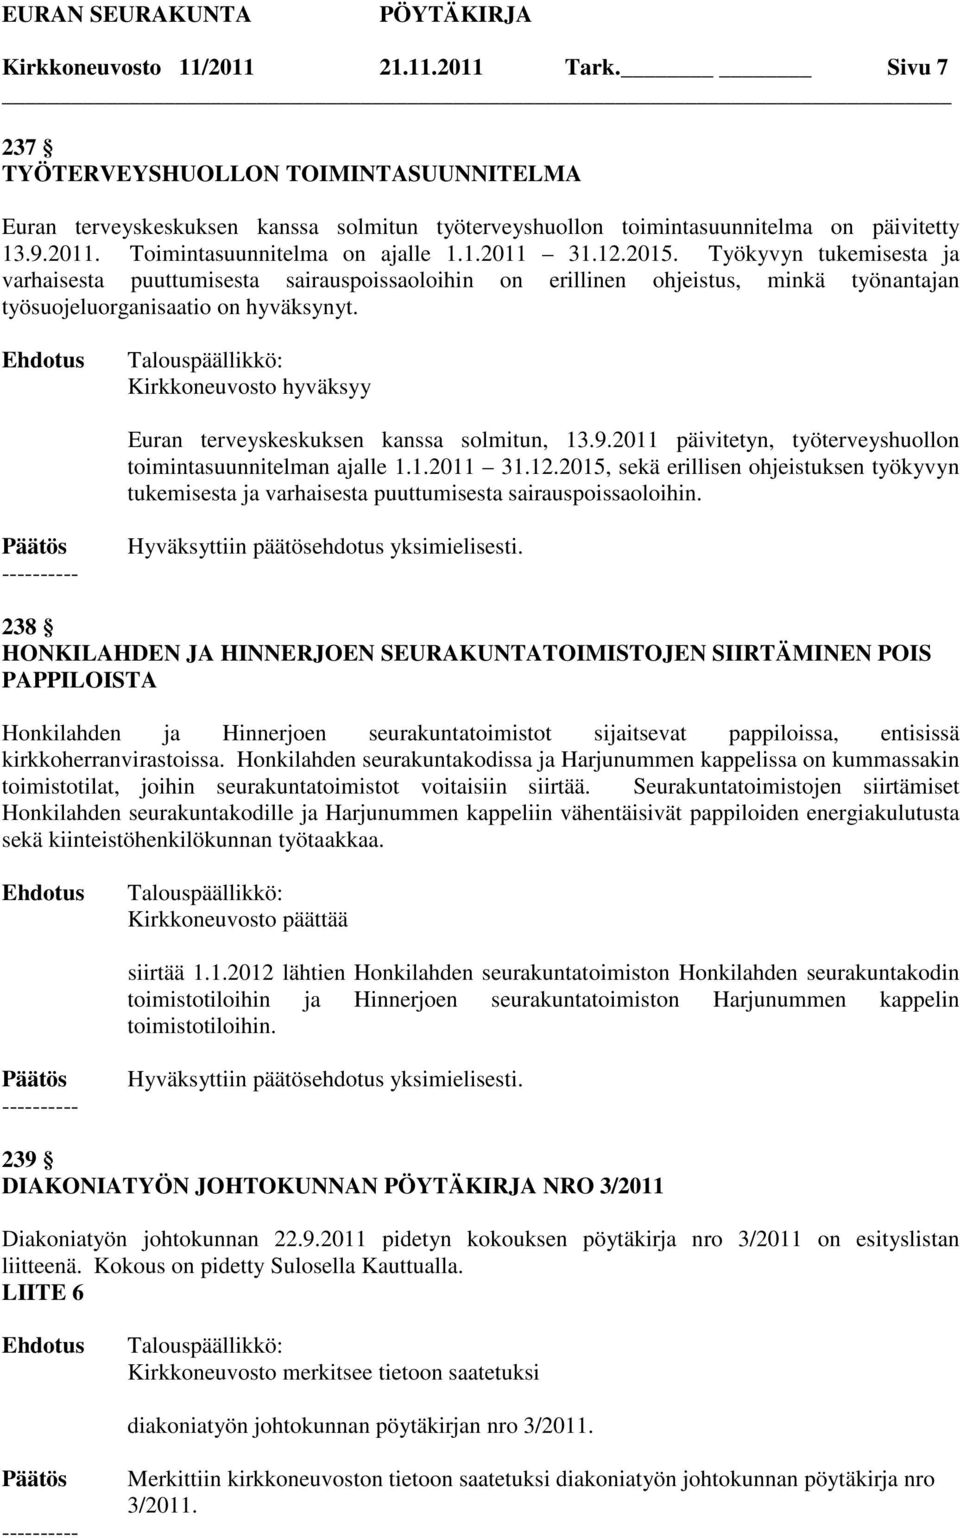 Kirkkoneuvosto hyväksyy Euran terveyskeskuksen kanssa solmitun, 13.9.2011 päivitetyn, työterveyshuollon toimintasuunnitelman ajalle 1.1.2011 31.12.